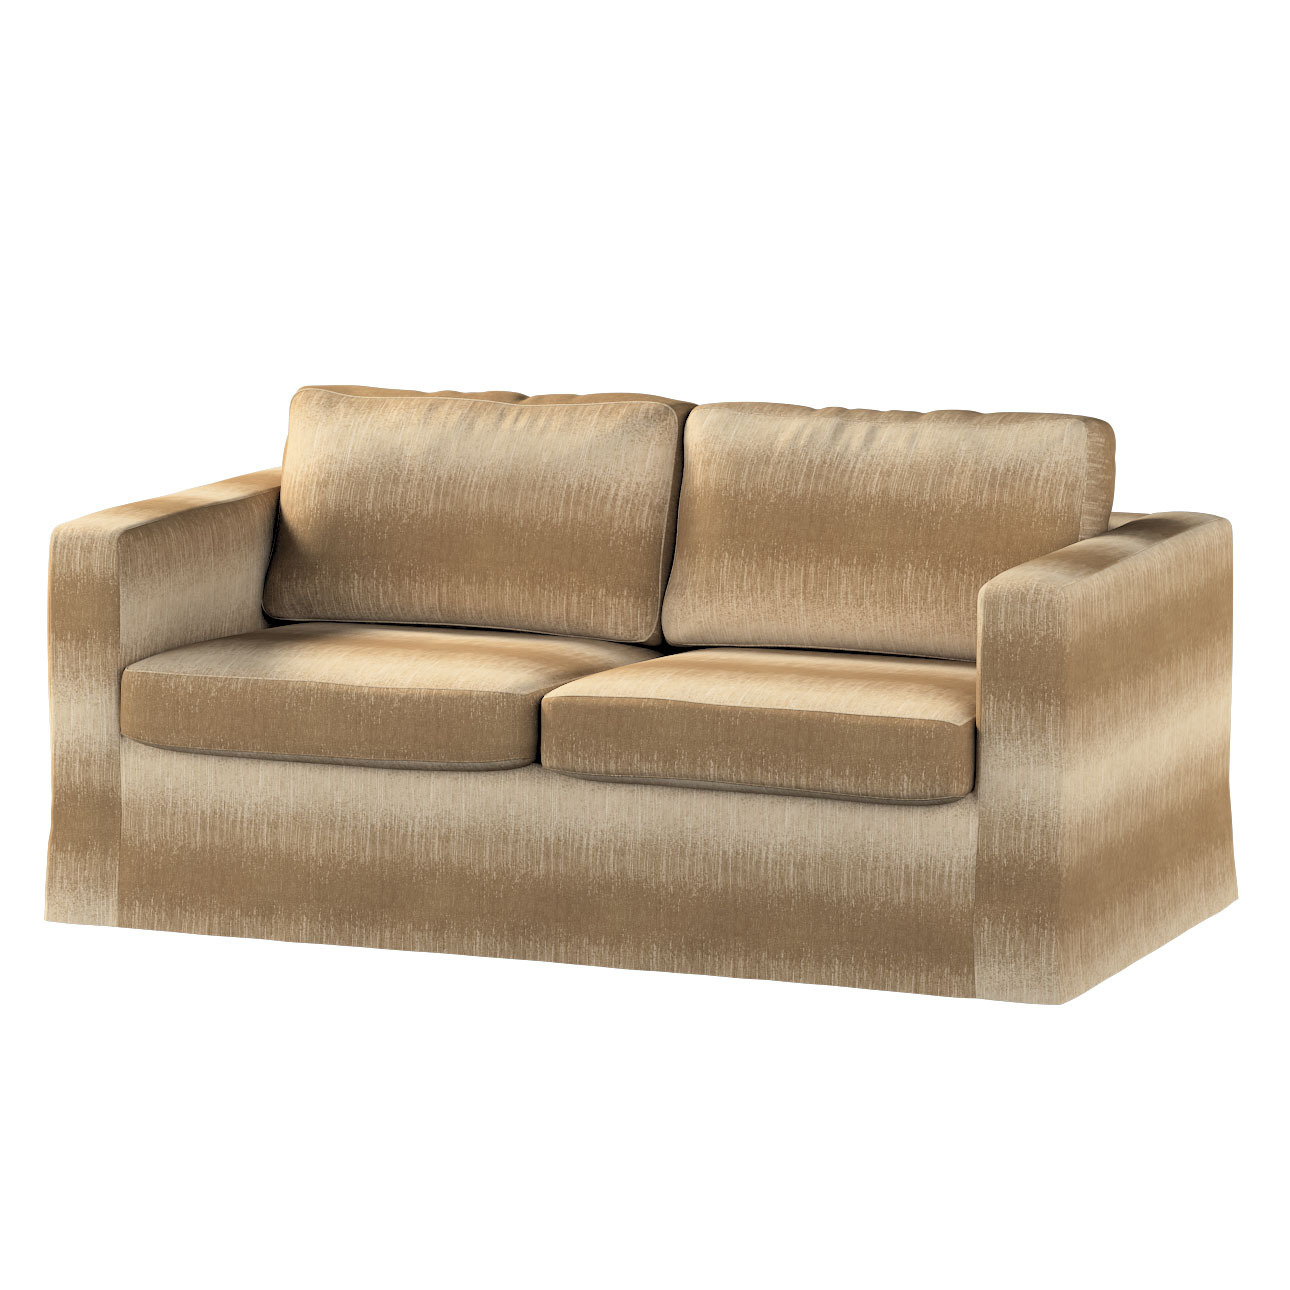 Bezug für Karlstad 2-Sitzer Sofa nicht ausklappbar, lang, creme-beige, Sofa günstig online kaufen